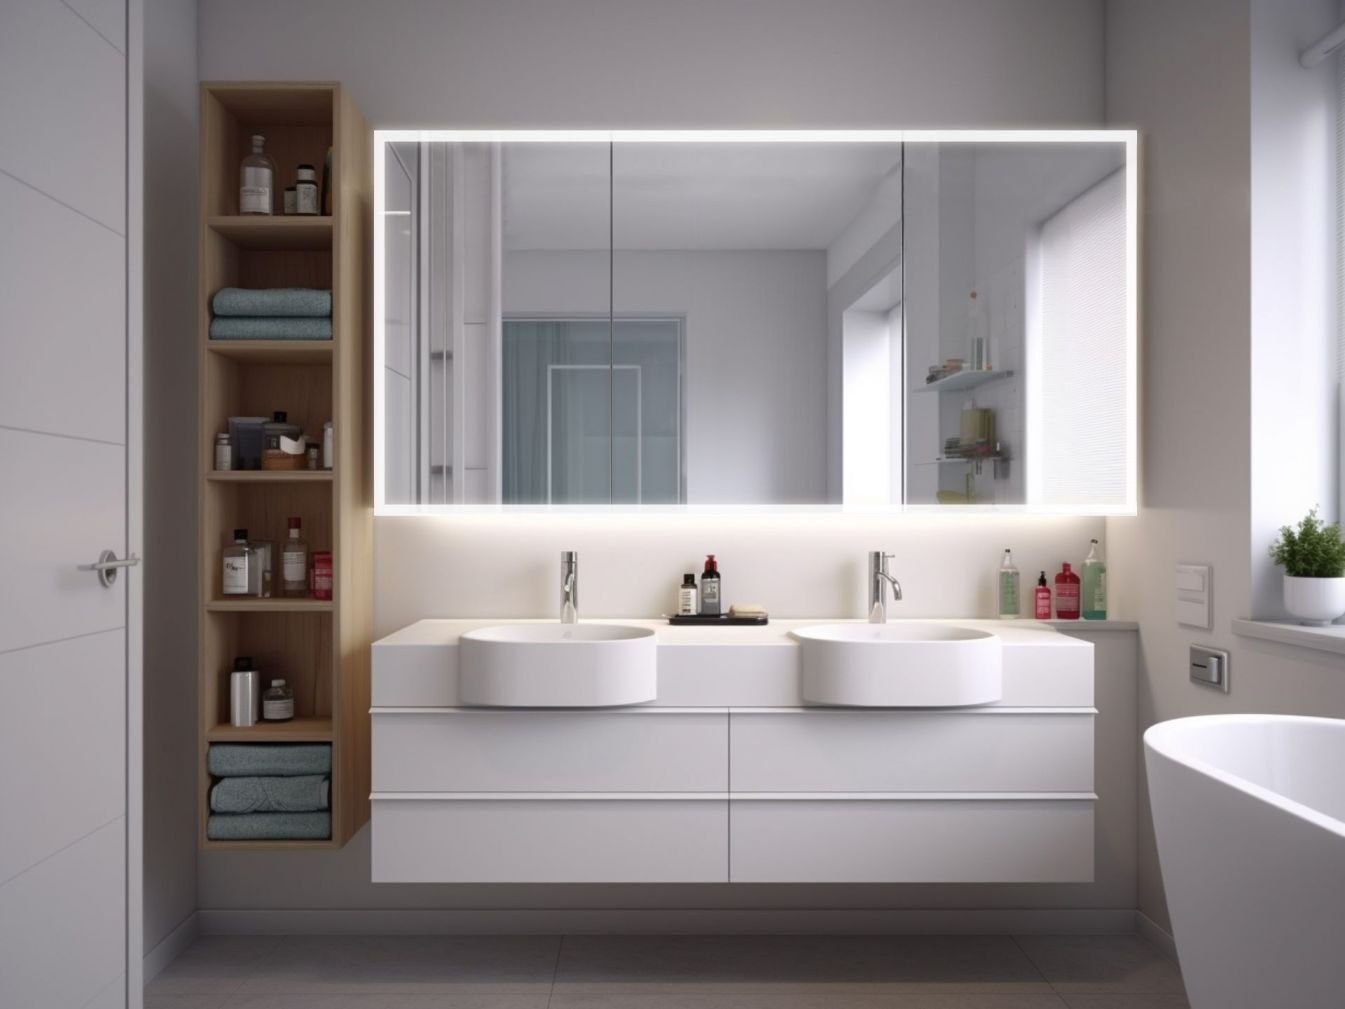 Led Spiegelschrank - Badspiegelschrank Kaufen » pertaining to Badezimmerschrank Selbst Gestalten